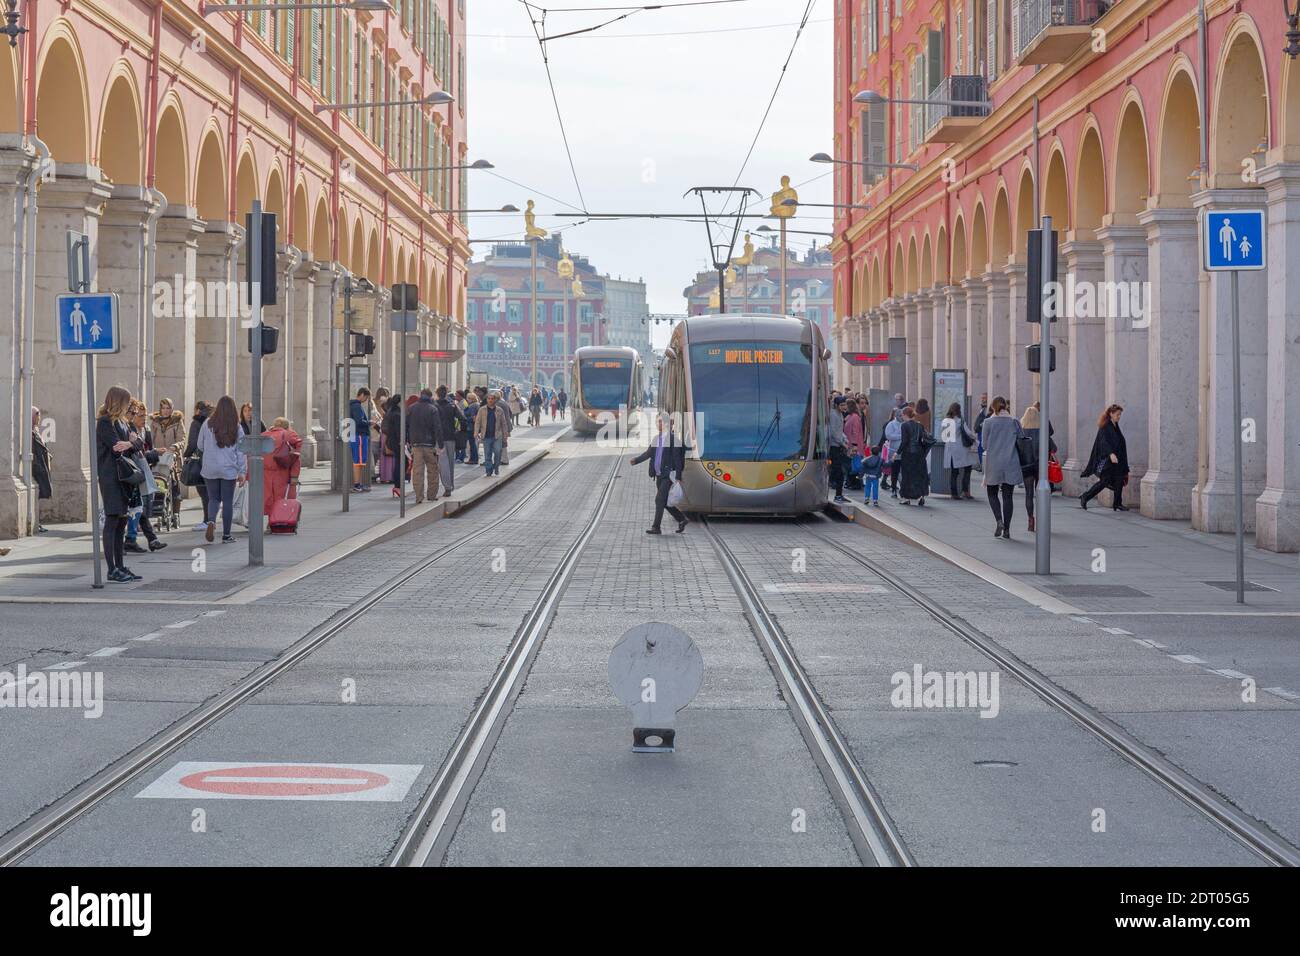 Nizza, Frankreich - 3. Februar 2016: Elektrische Straßenbahnen und Pendler am Bahnhof Platform in Nizza, Frankreich. Stockfoto